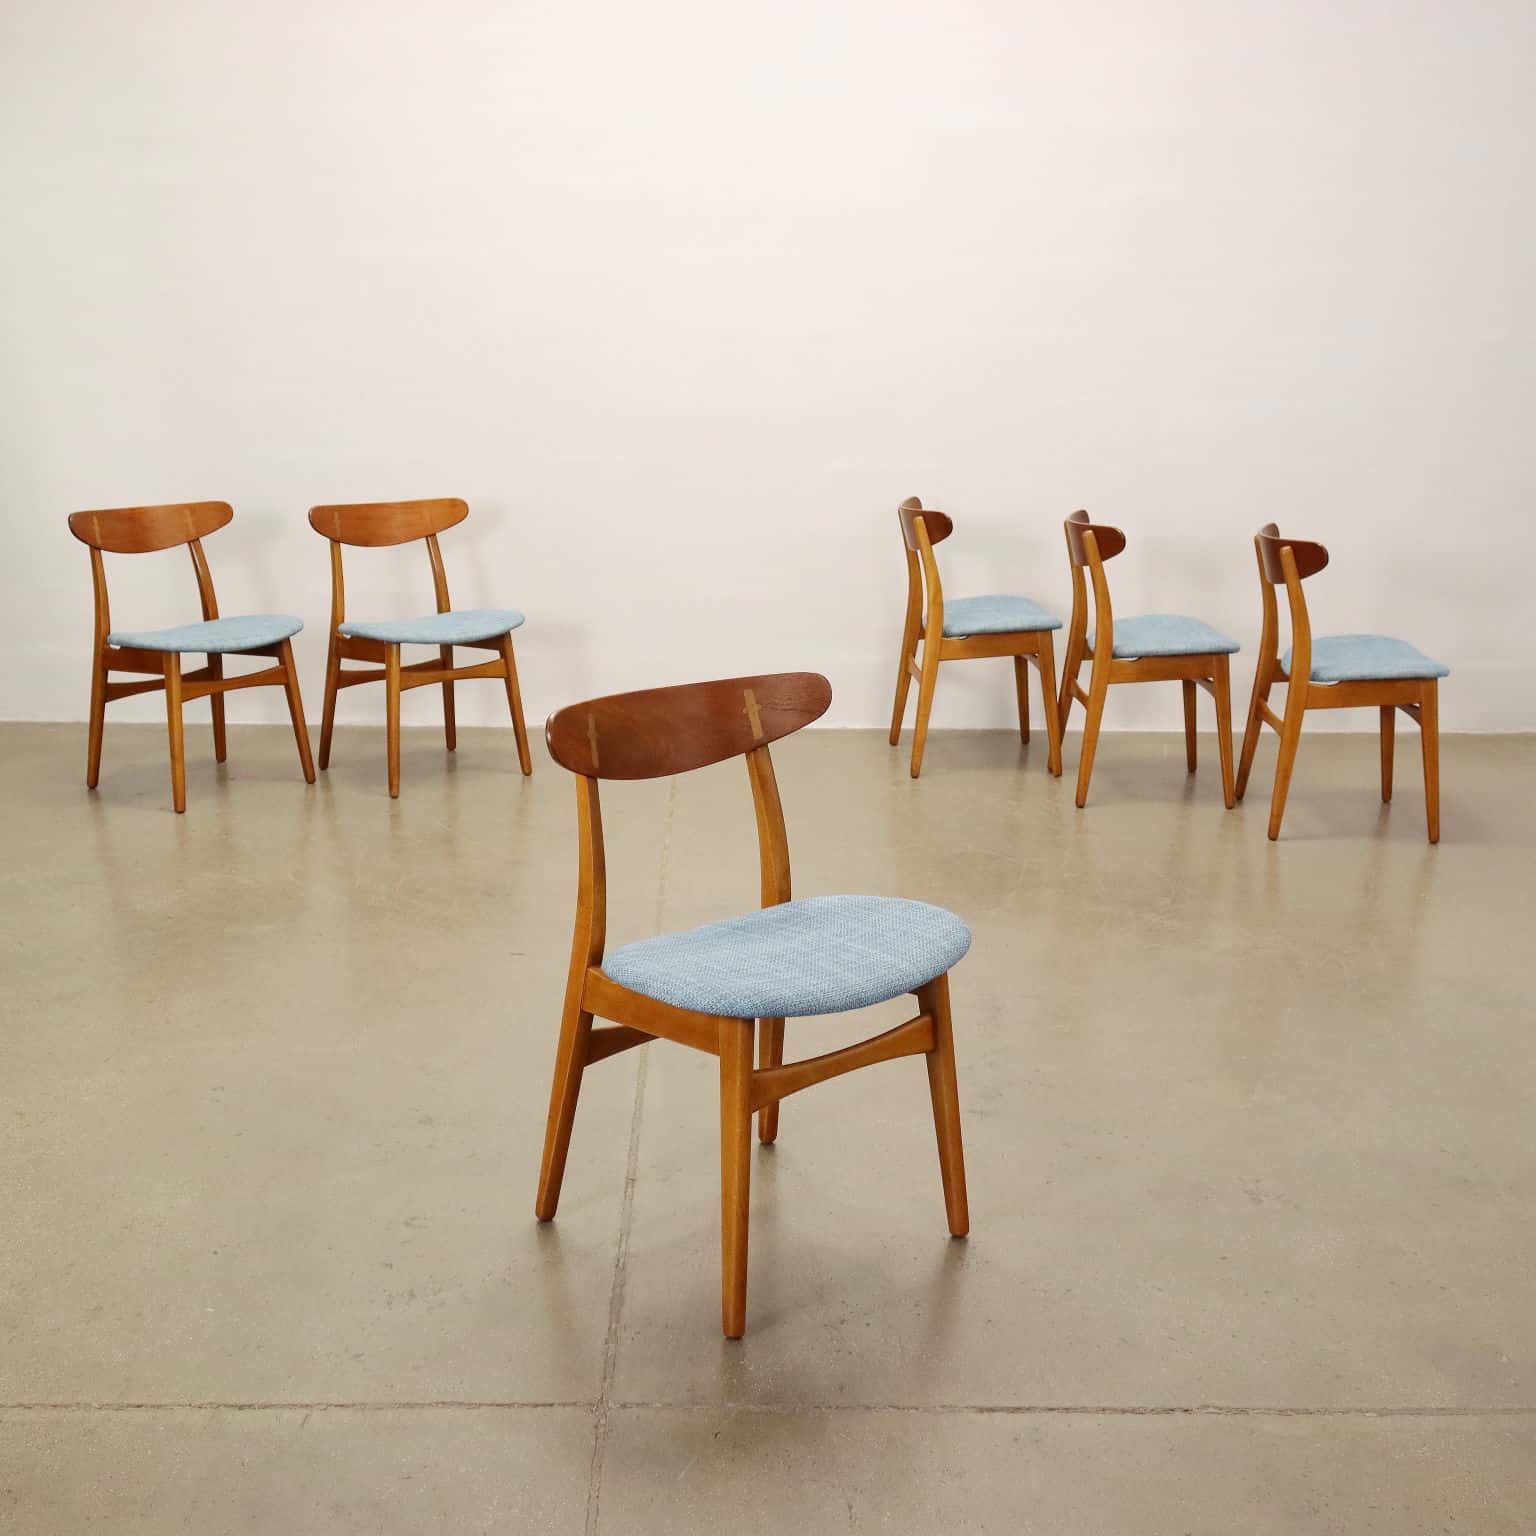 Set di sei sedie da pranzo anni '50-'60 modello CH30 in legno di teak con schienale curvato e seduta in tessuto, appena rifatto. Presentano il marchio della produzione sotto la seduta. Design di Hans Wegner, produzione Carl Hansen & Son.